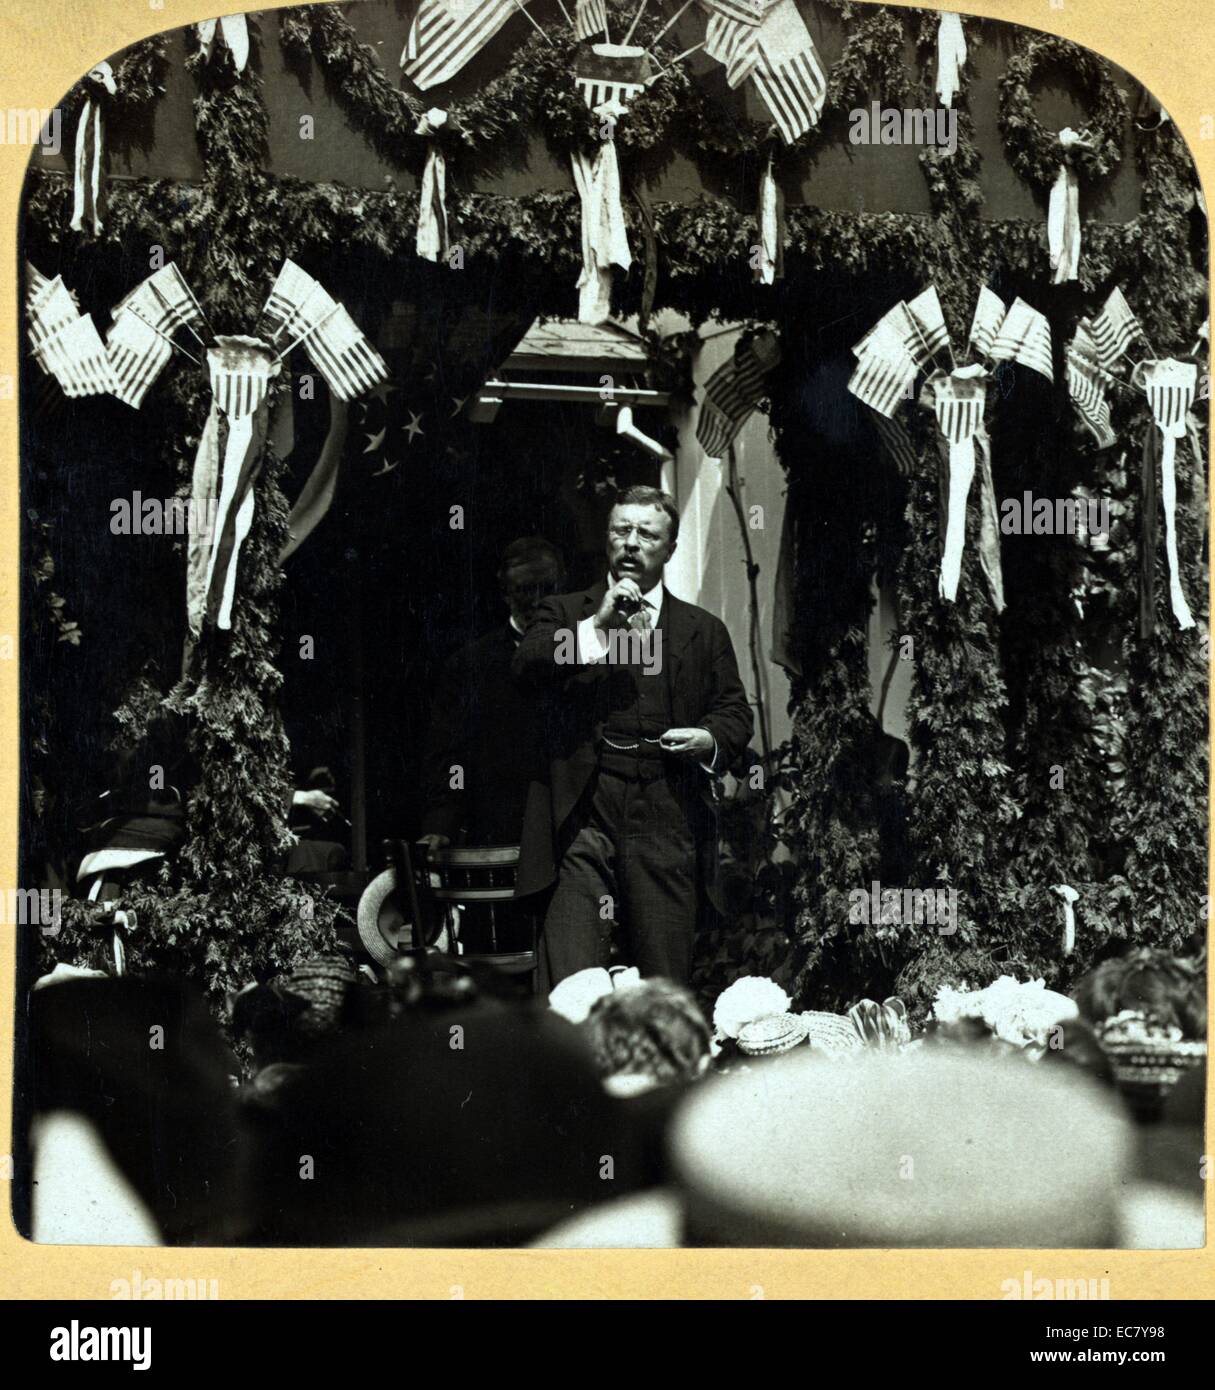 "Avete inteso che i migliori prodotti di Stato erano i suoi uomini e donne". Il presidente Roosevelt a Proctor, Vt.' Stereografia mostra Roosevelt (1858-1918) parlando a una platea. Foto Stock